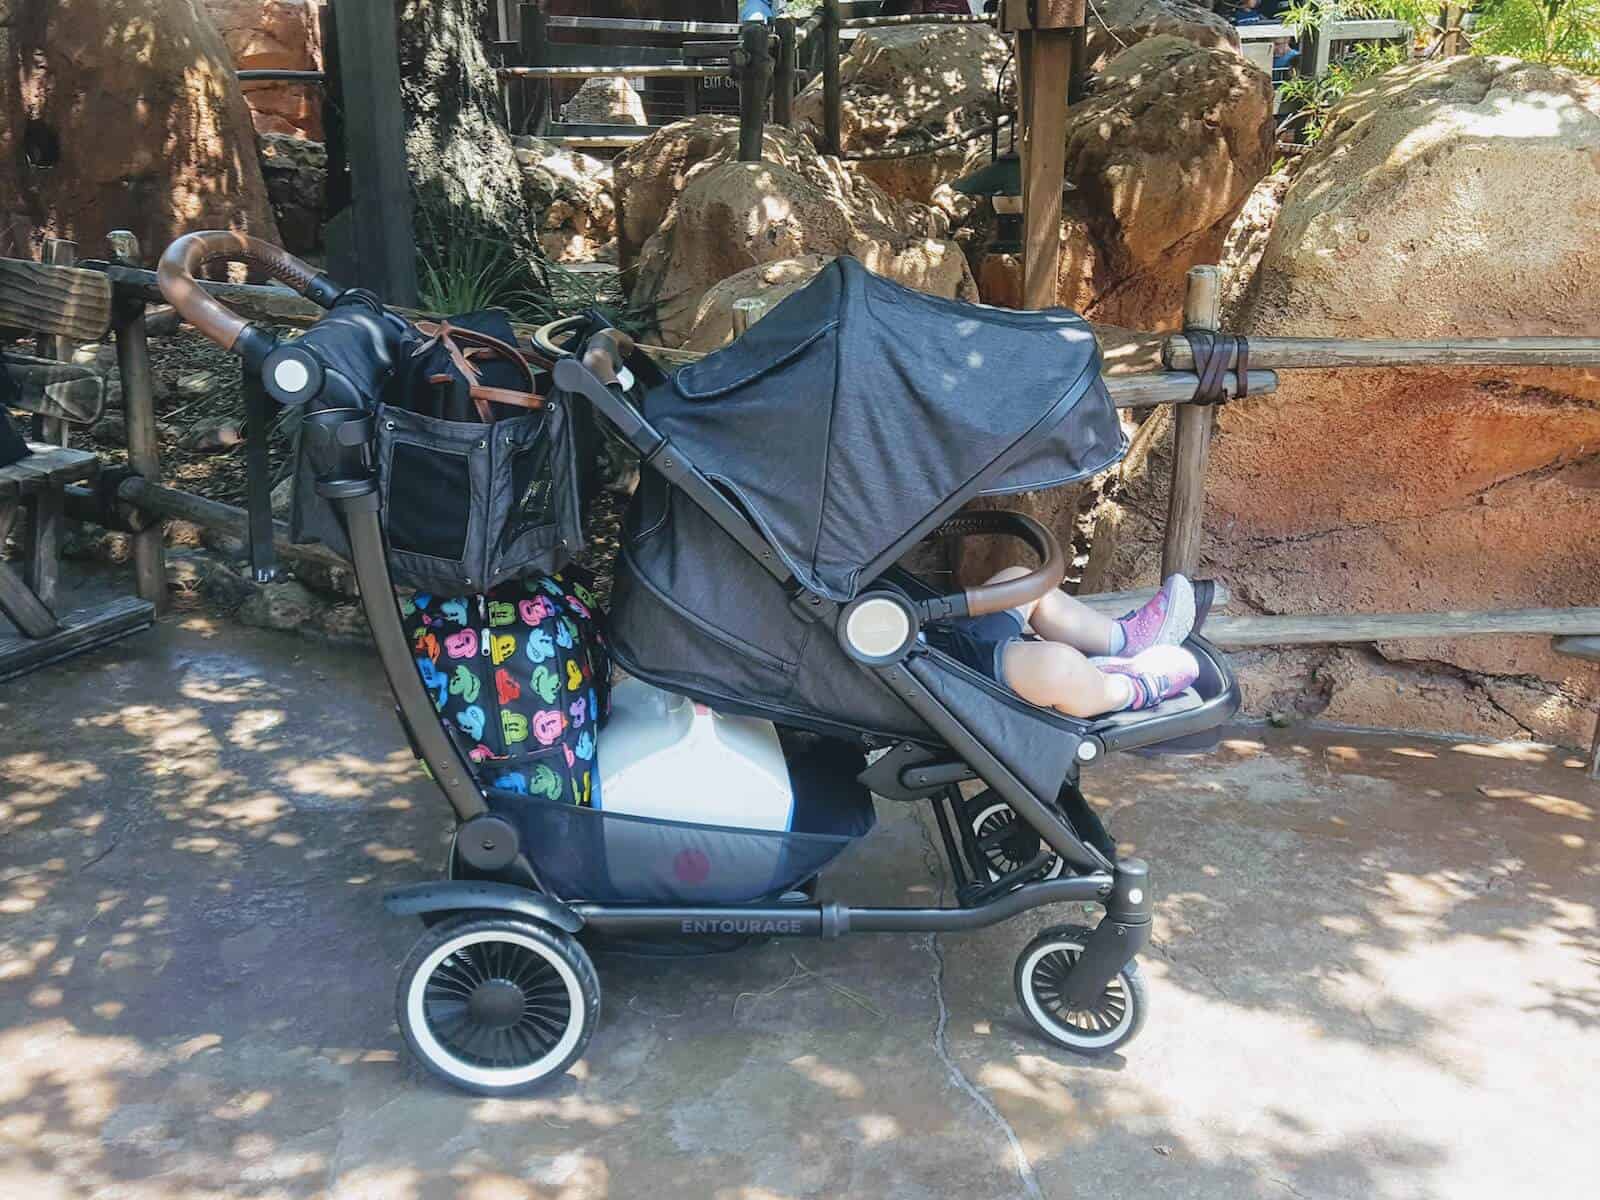 Little girl in stroller at Disneyland.